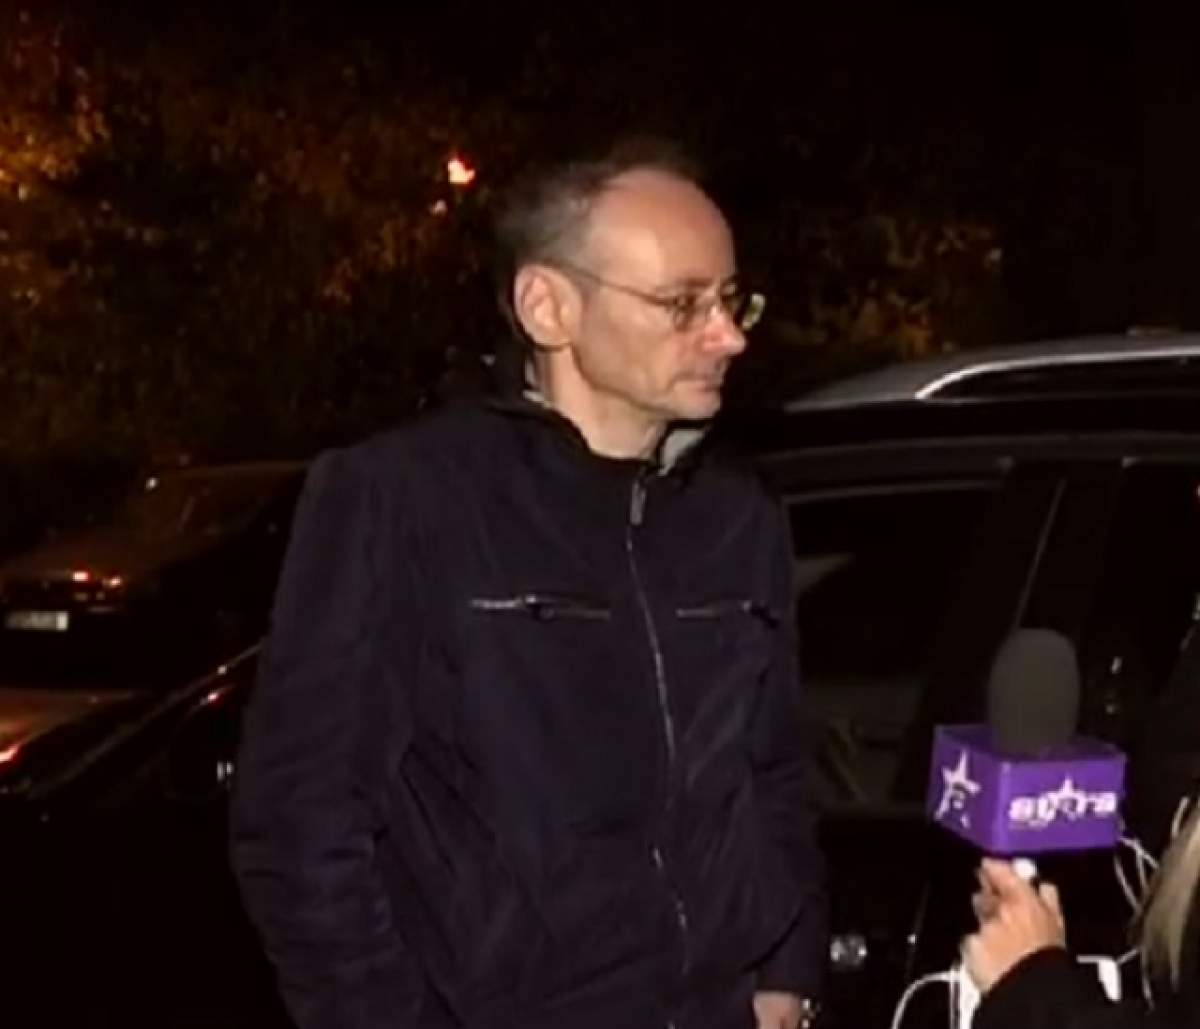 VIDEO / Mihai Albu, totul despre scandalul recent cu fosta soţie! "Am avut o pornire de moment"